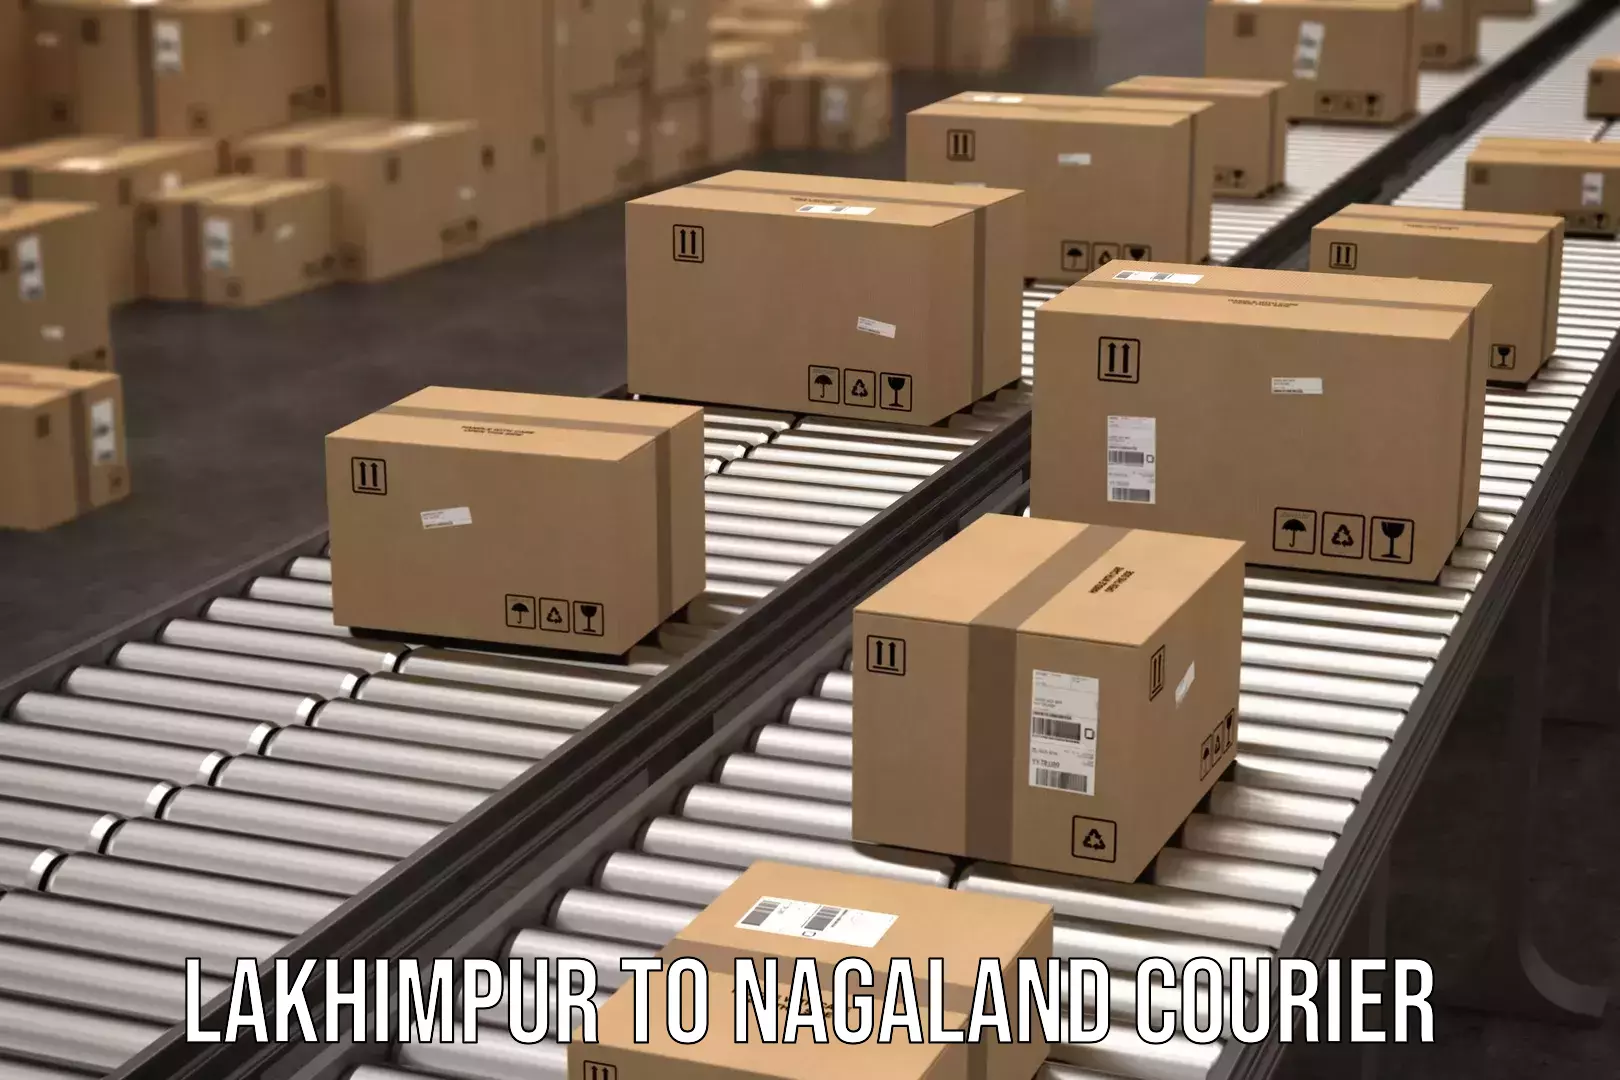 24/7 shipping services Lakhimpur to NIT Nagaland